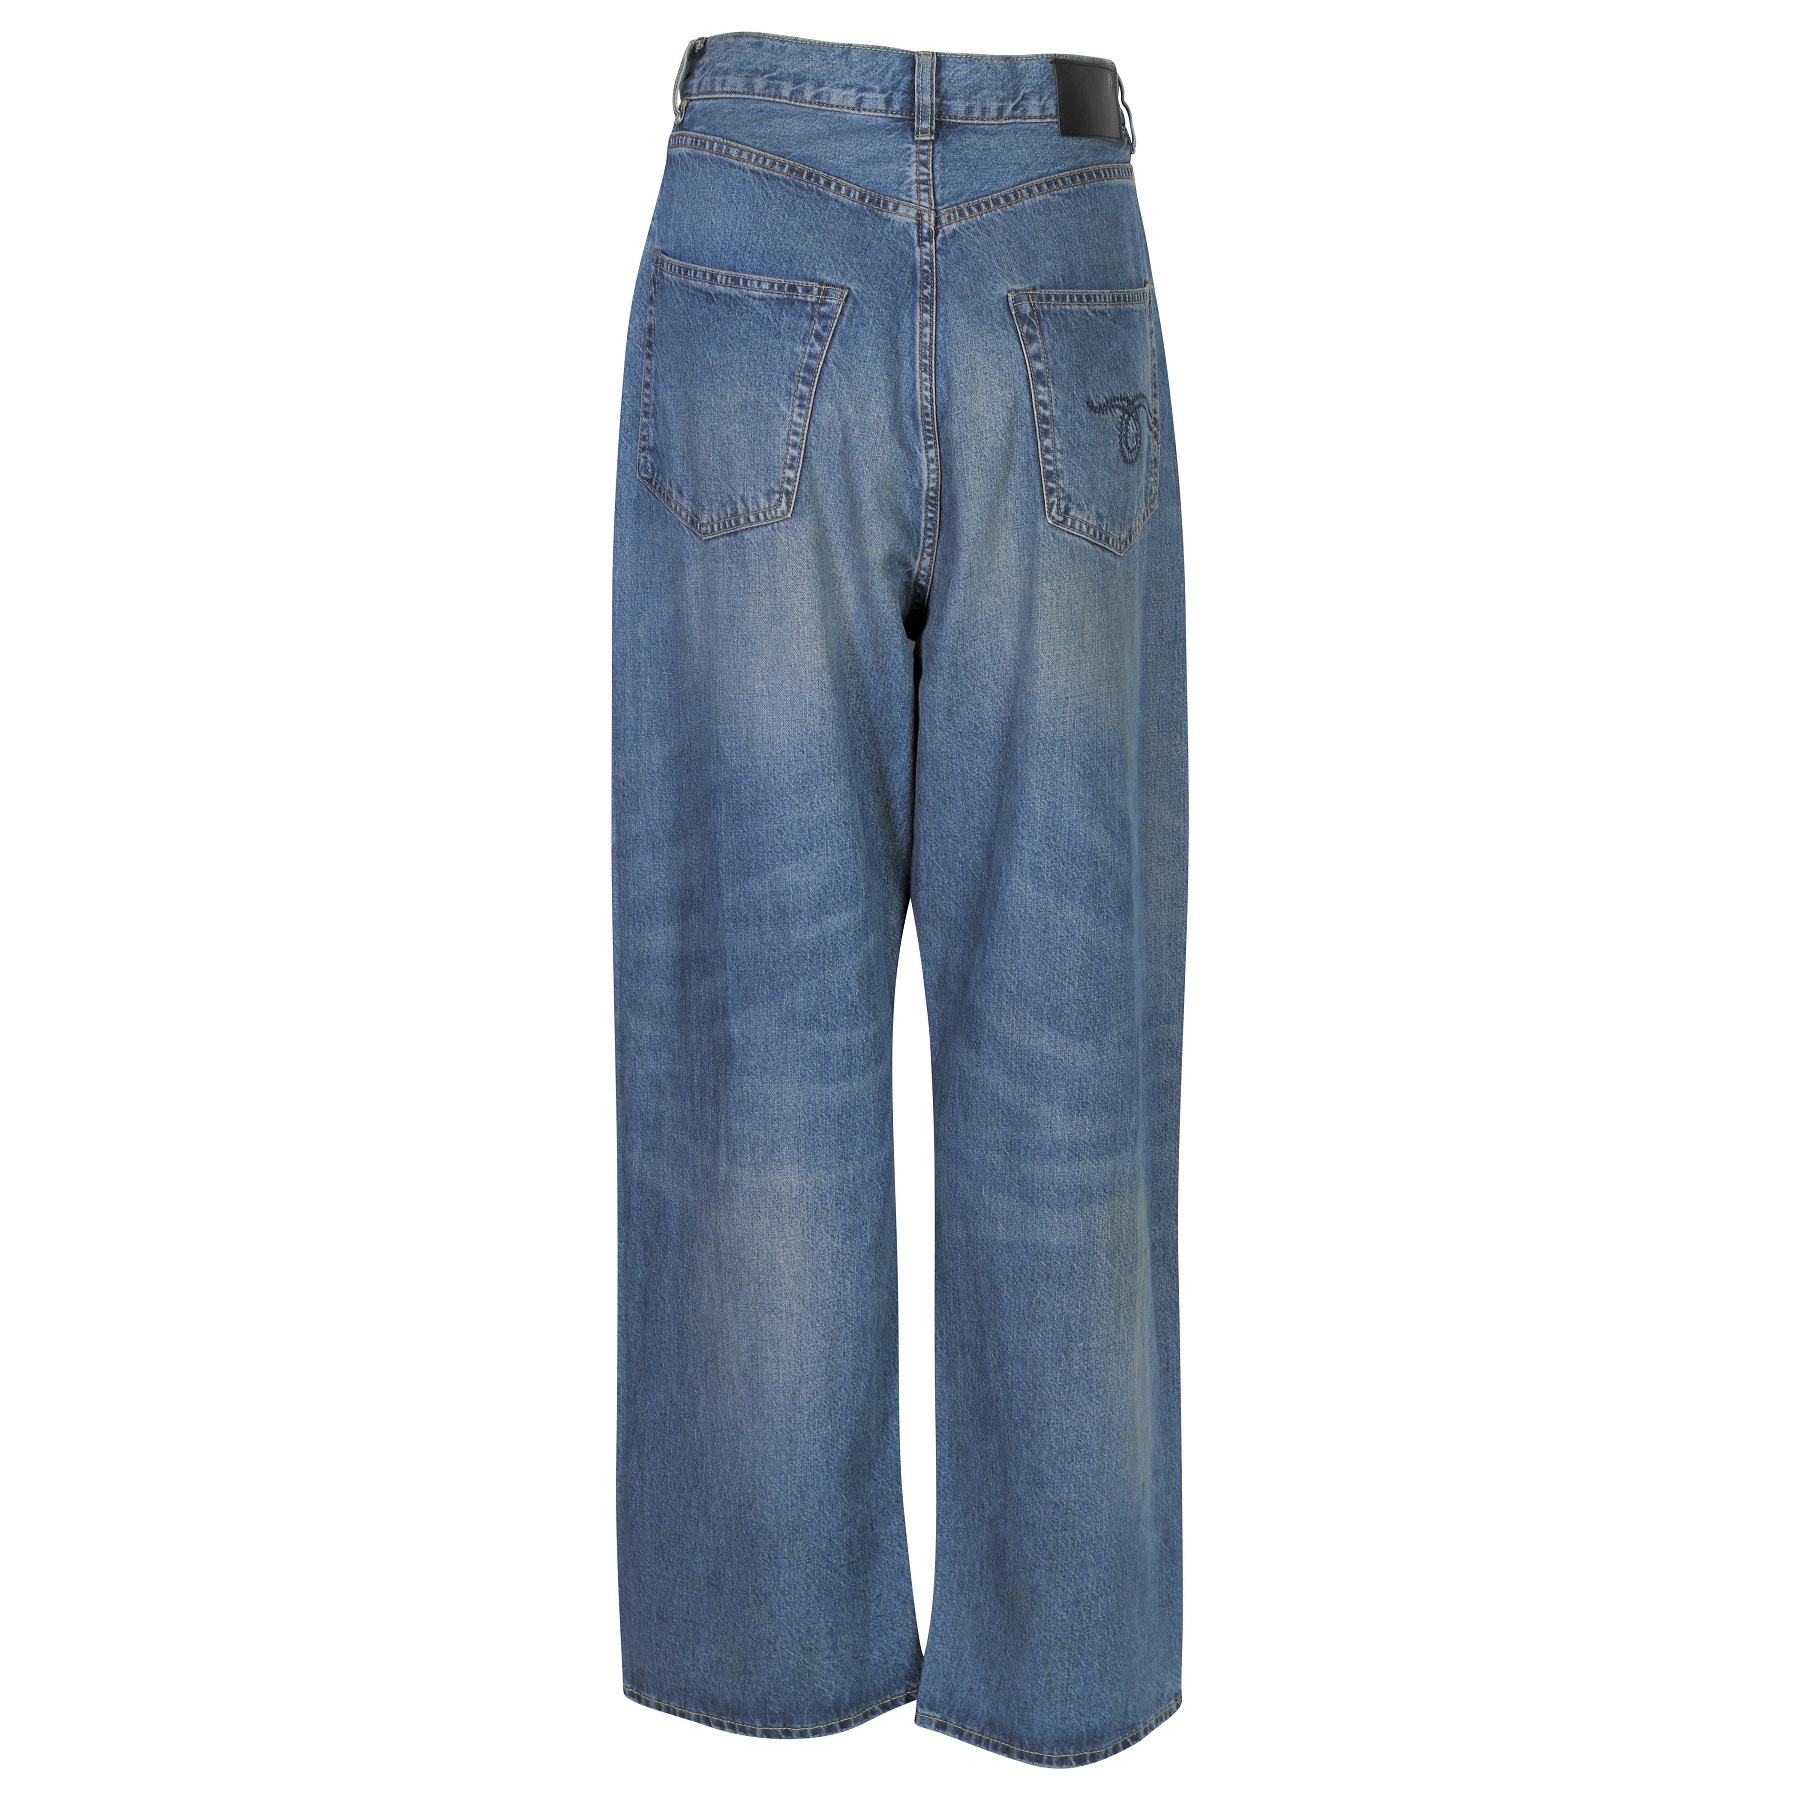 R13 Venti Jeans in Alan Blue 30